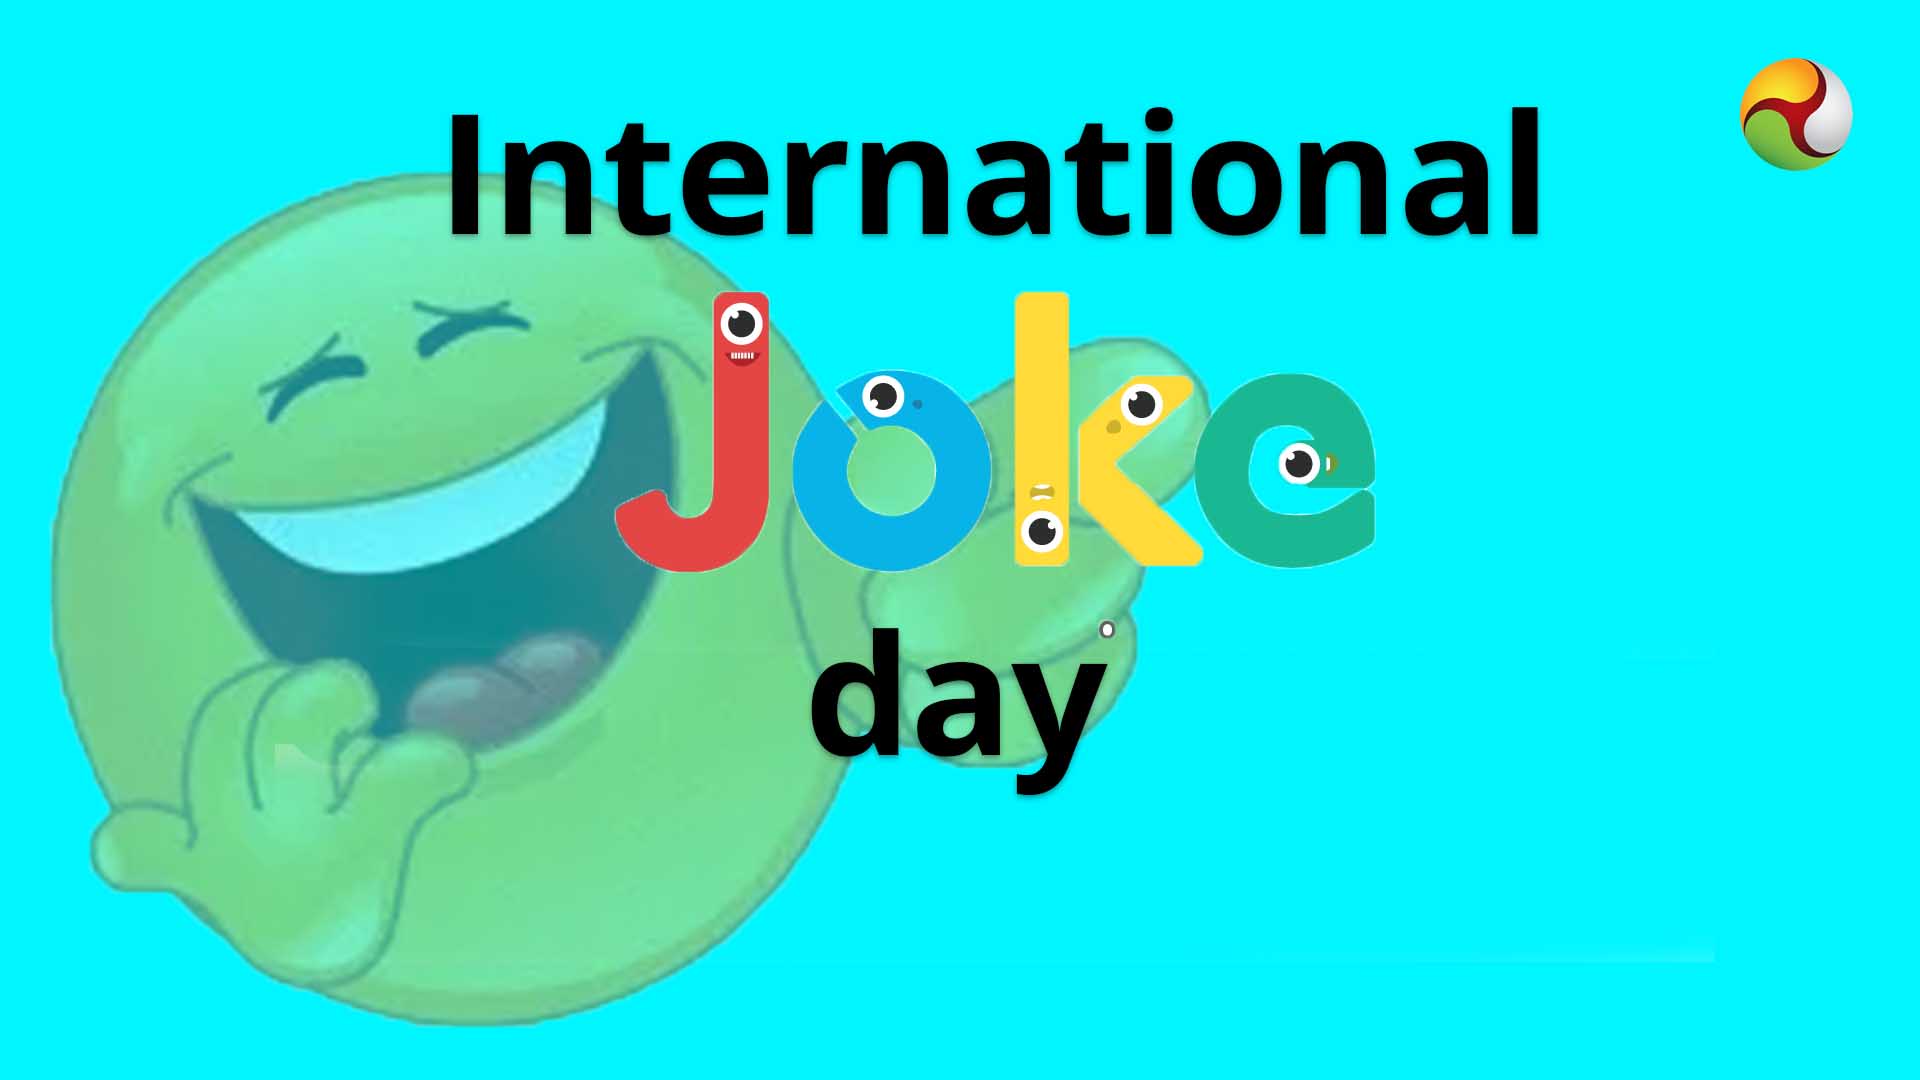 Joke Day